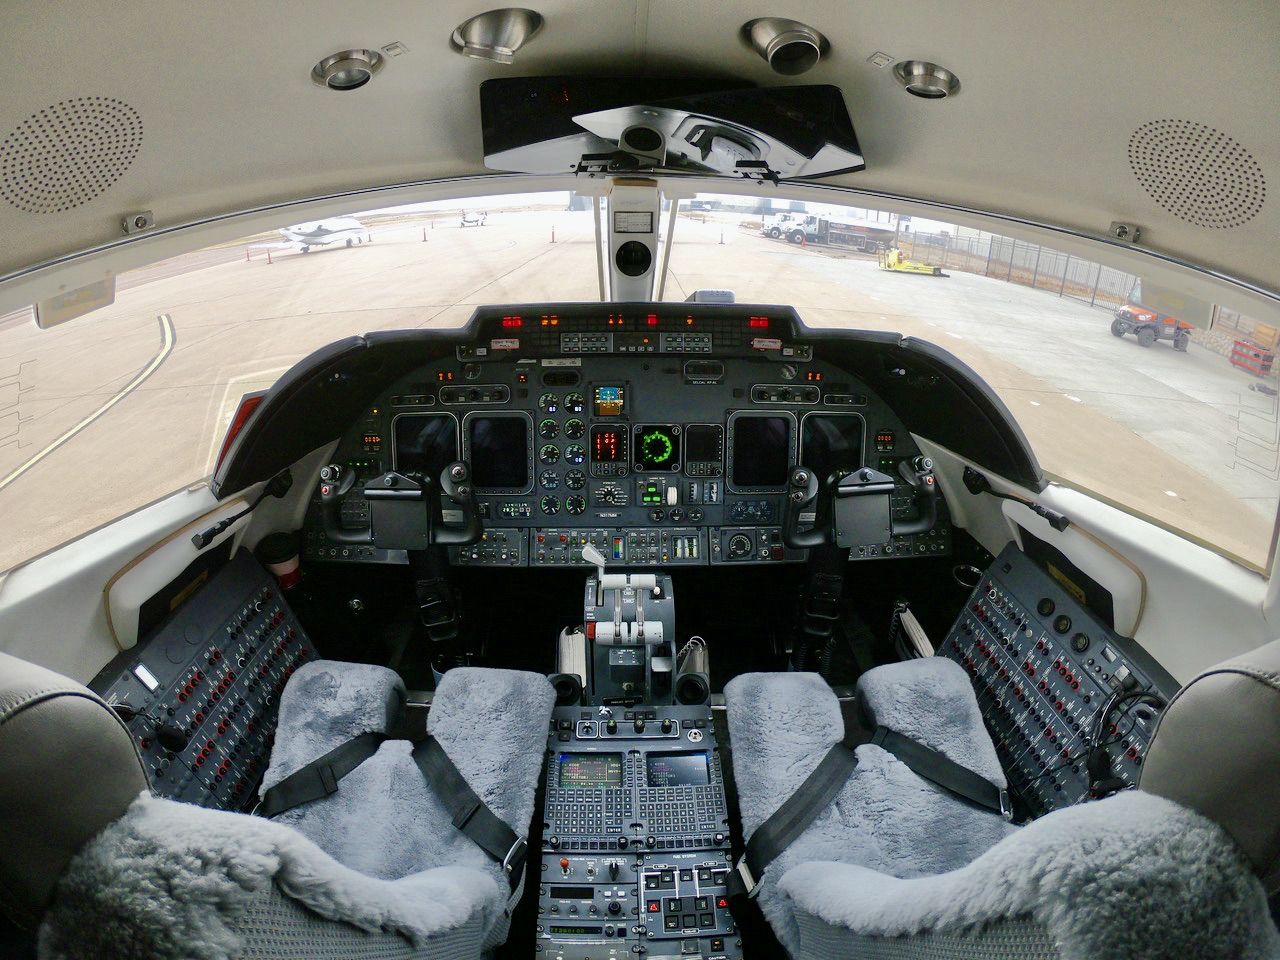 SOLD 2002 Learjet 60 sn 236